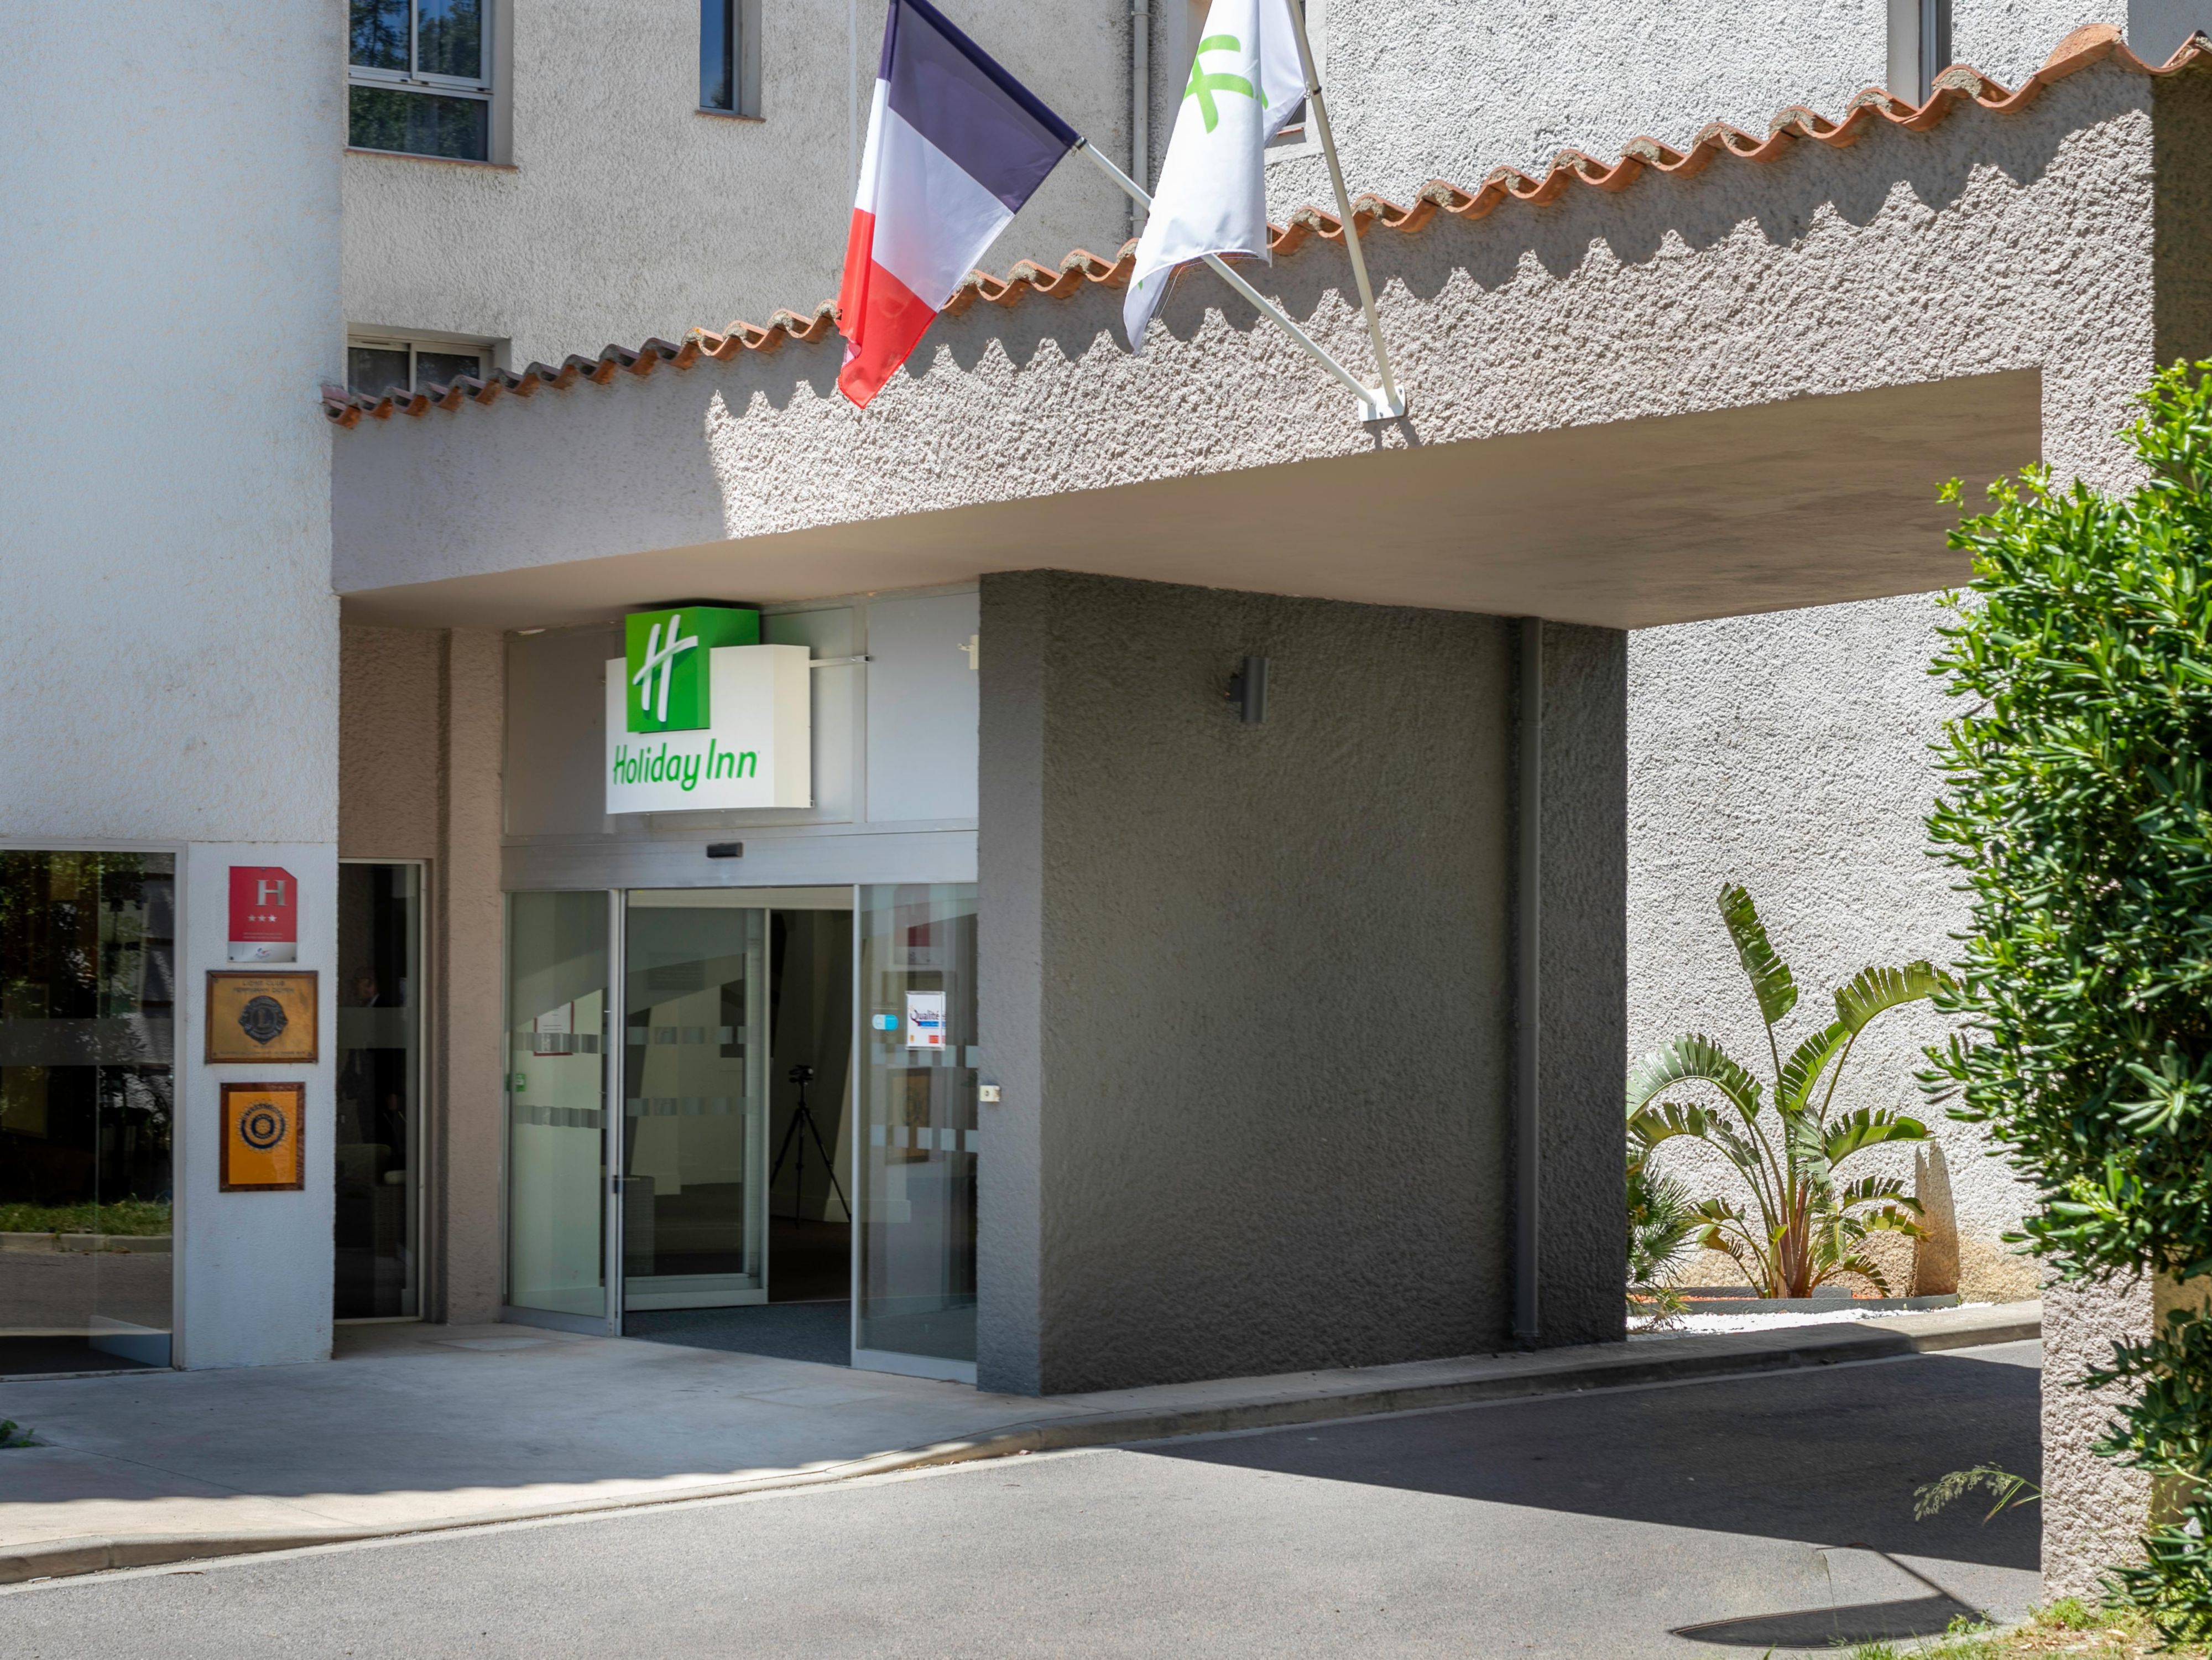 L'Holiday Inn ® Perpignan dispose d'un parking gratuit et sécurisé de 101 places. Ce parking est parfait pour les voitures, les motos et aussi les bus. Vous pouvez simplement déposer votre voiture devant la réception.